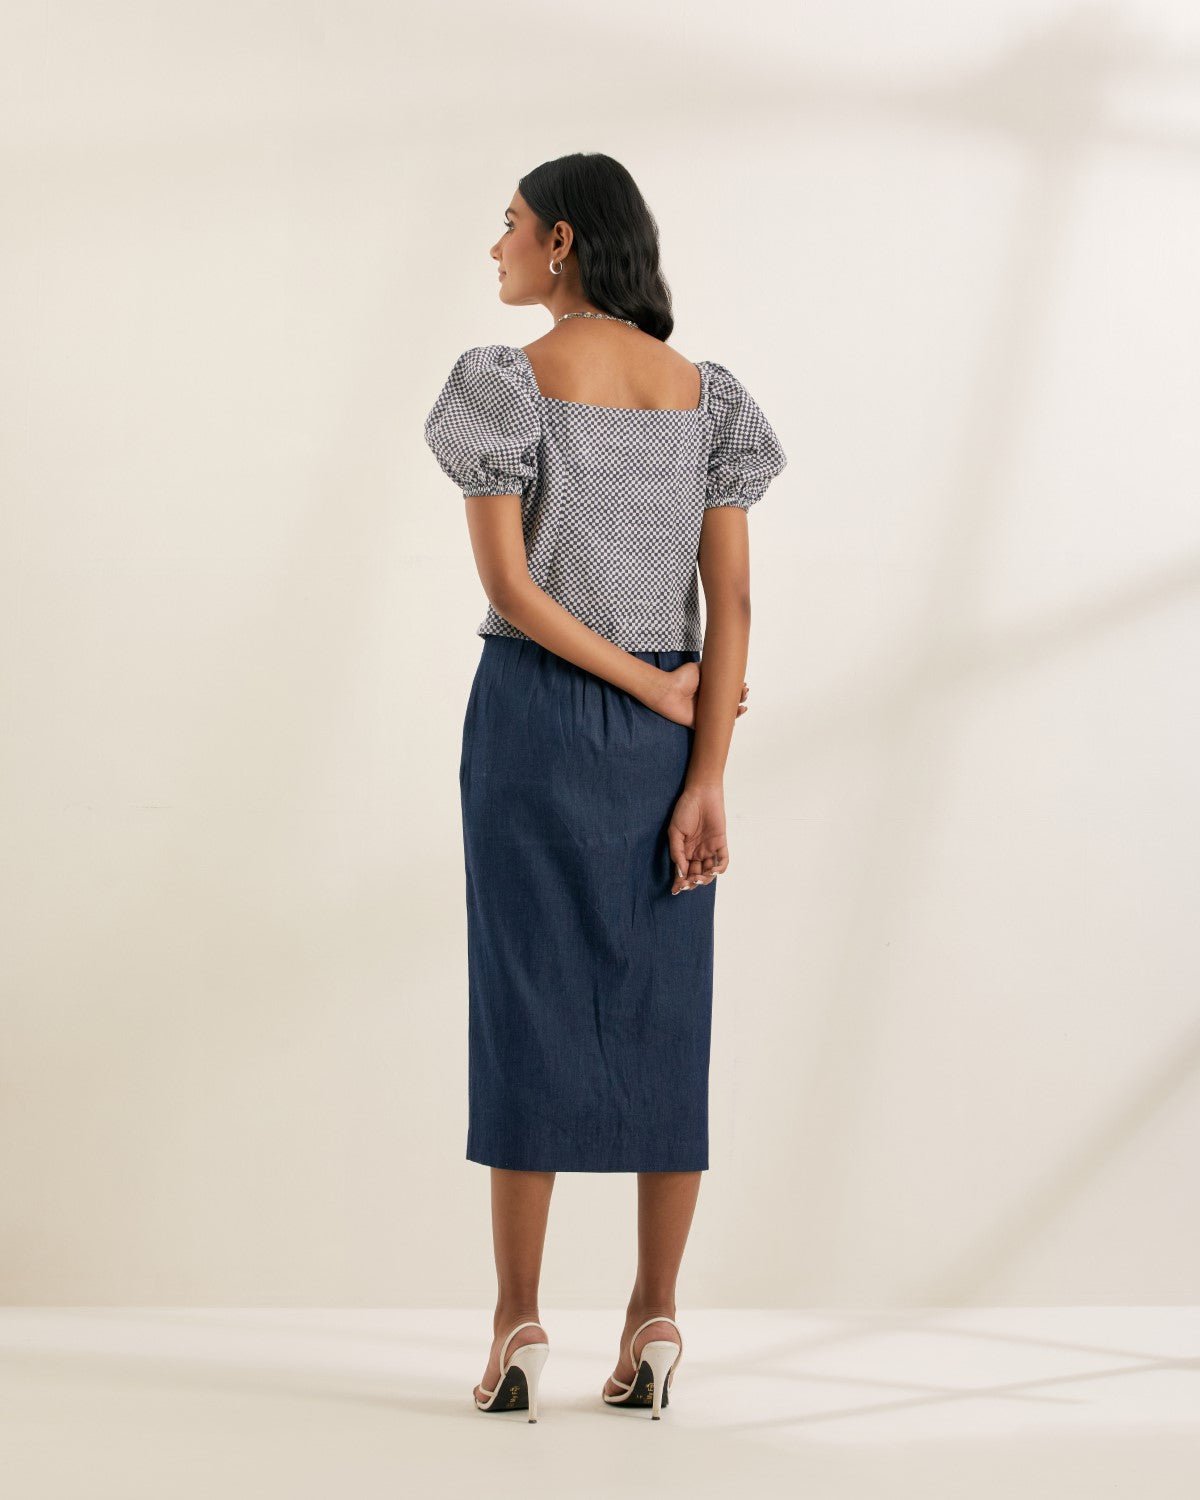 ON SALE- Dark Denim skirt with hand stitches